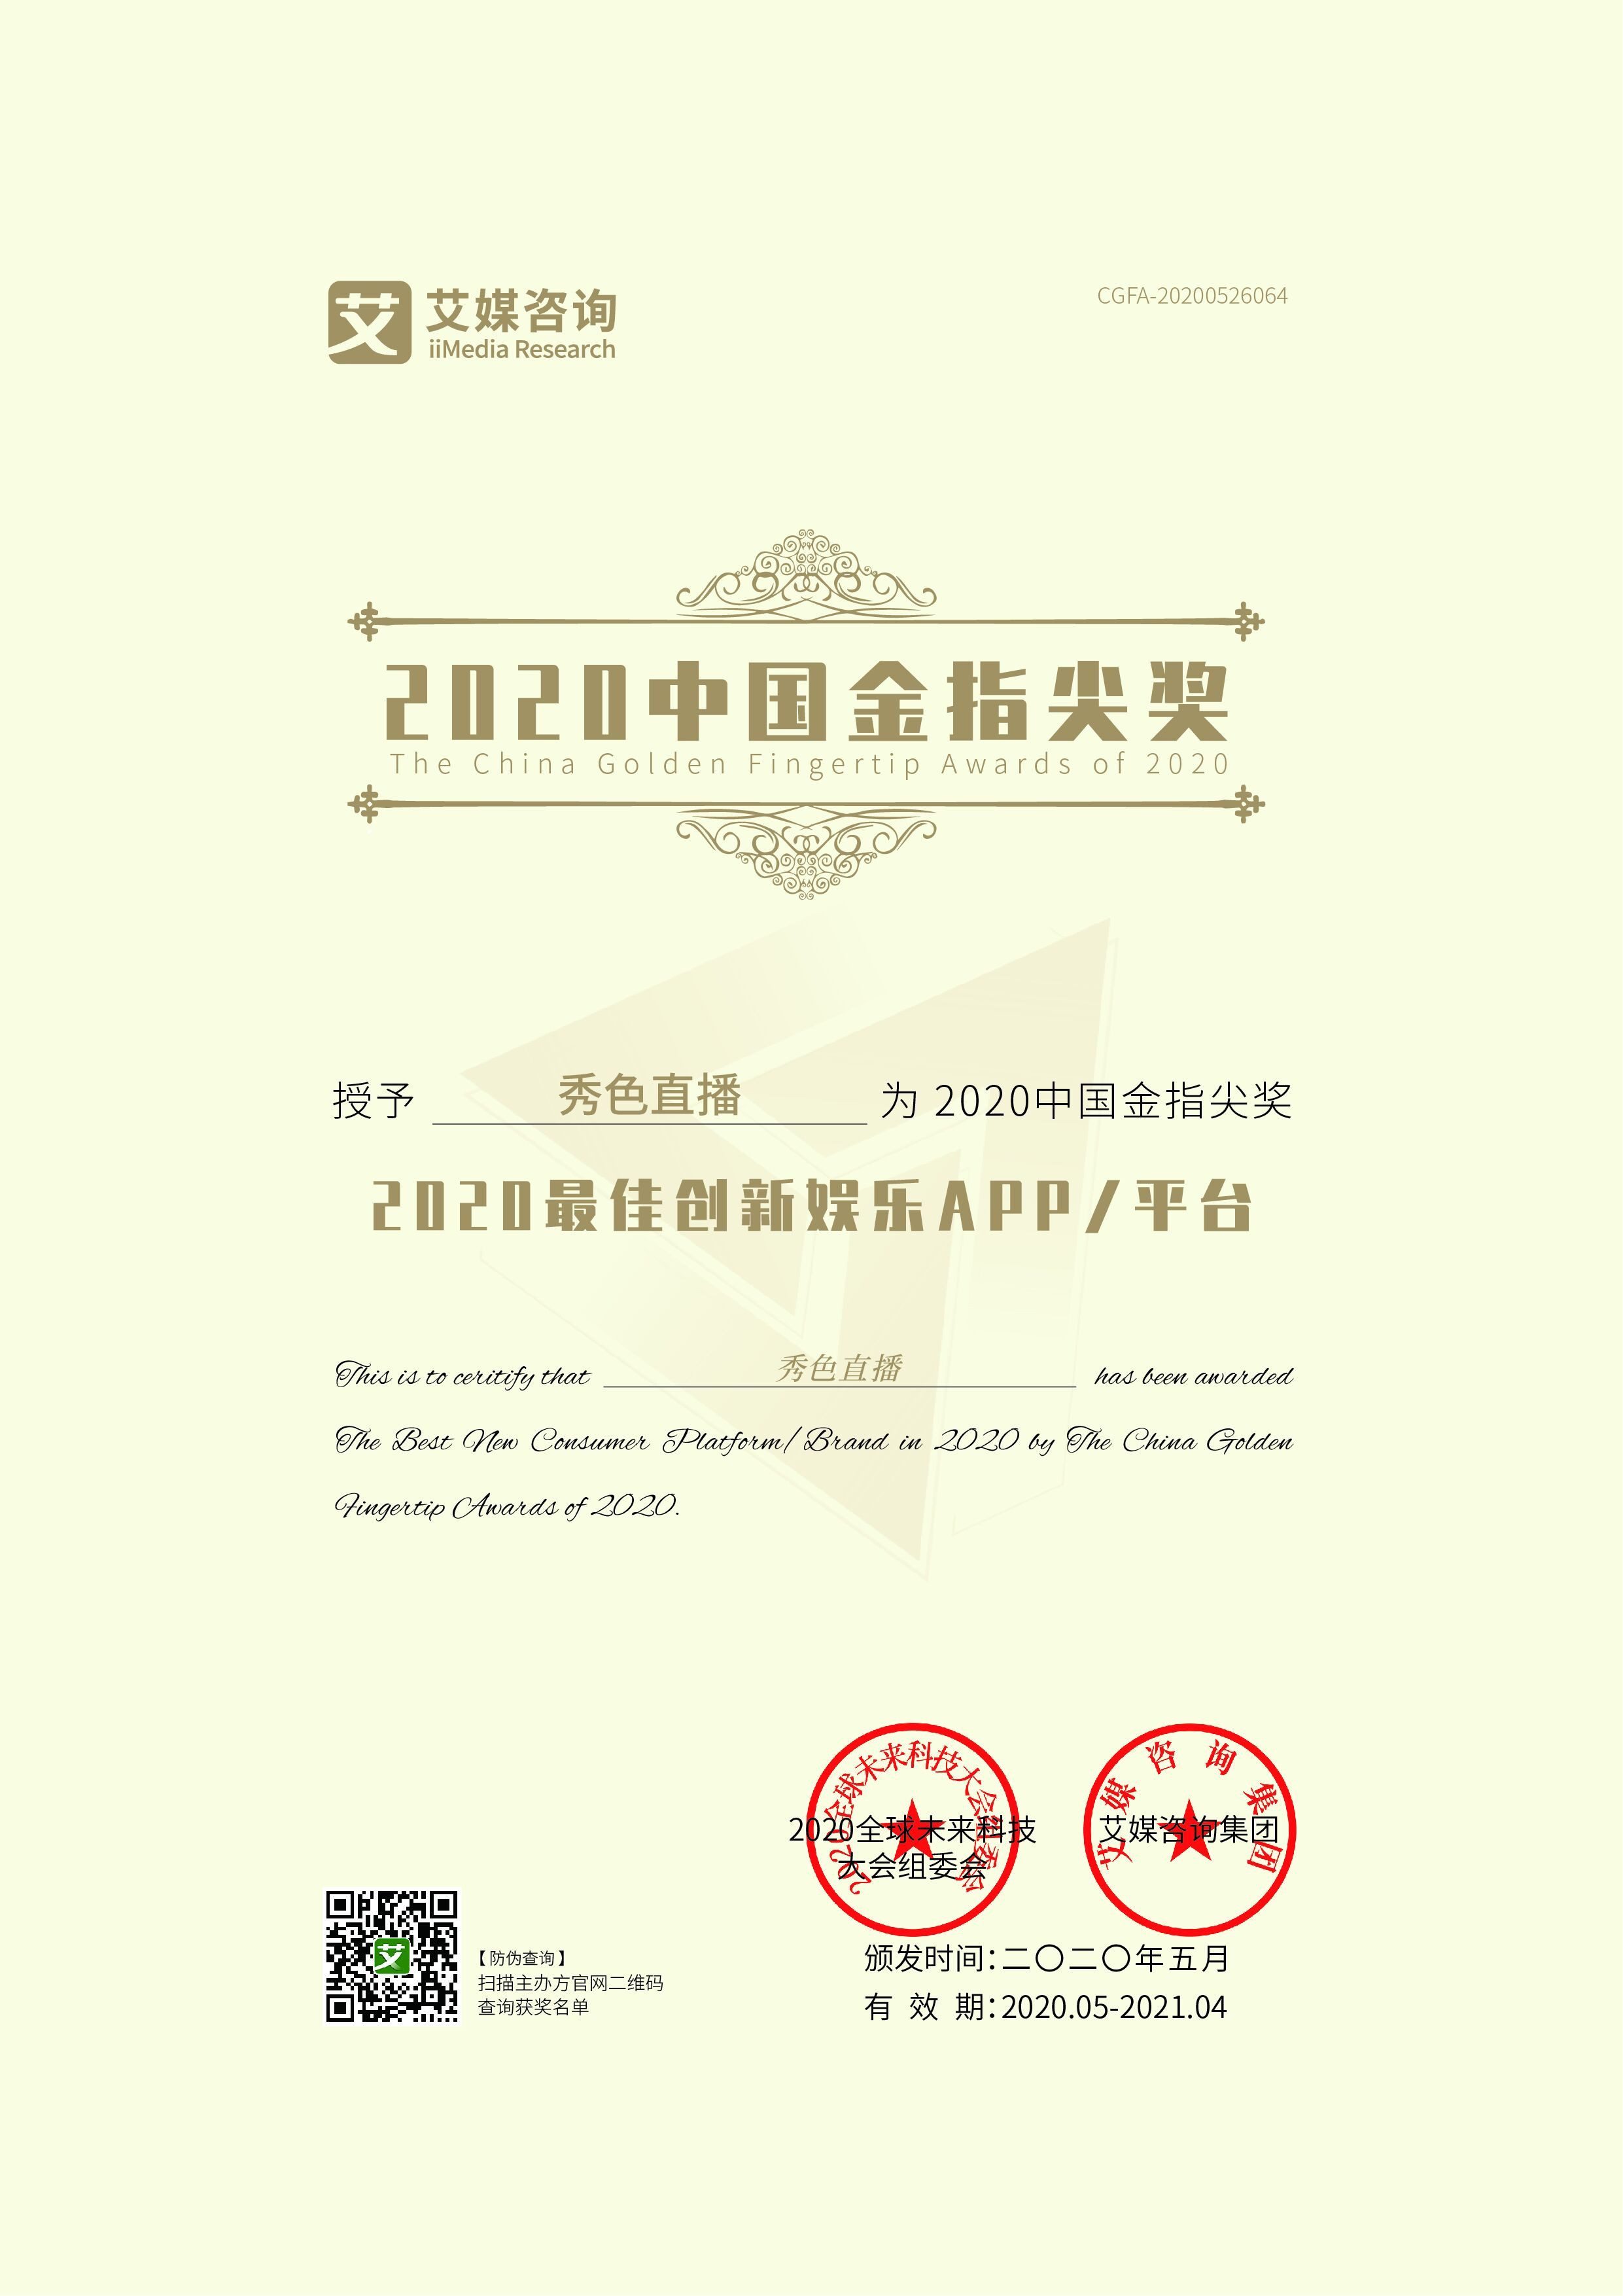                             China Golden Fingertip Award - Best Innovative Entertainment Platform 2020
                        